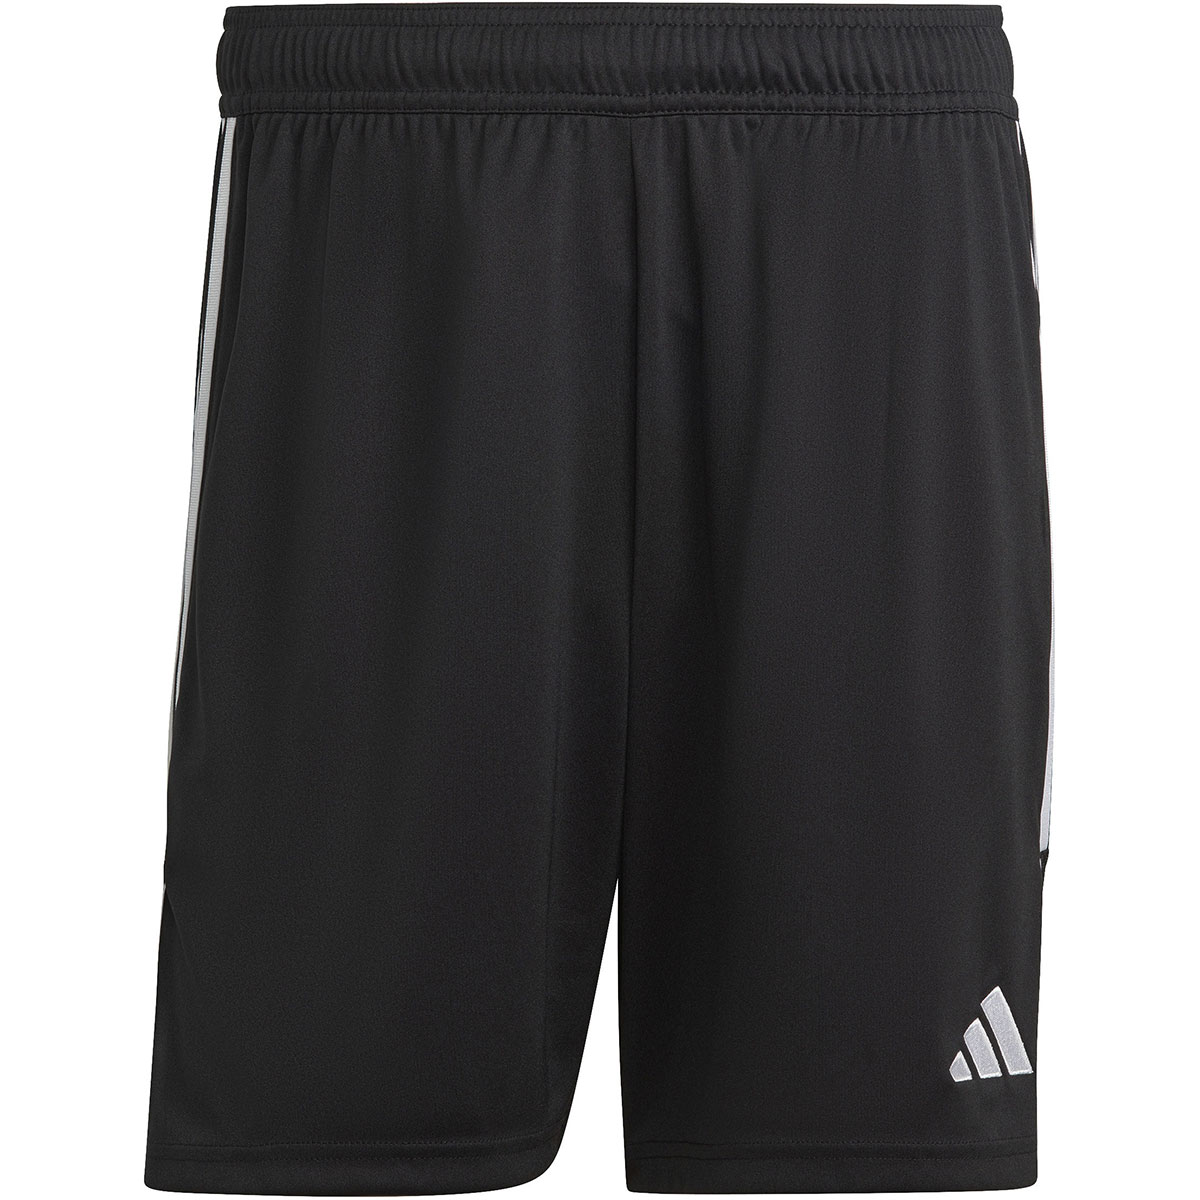 Adidas Herren Shorts Tiro 23 schwarz-weiß